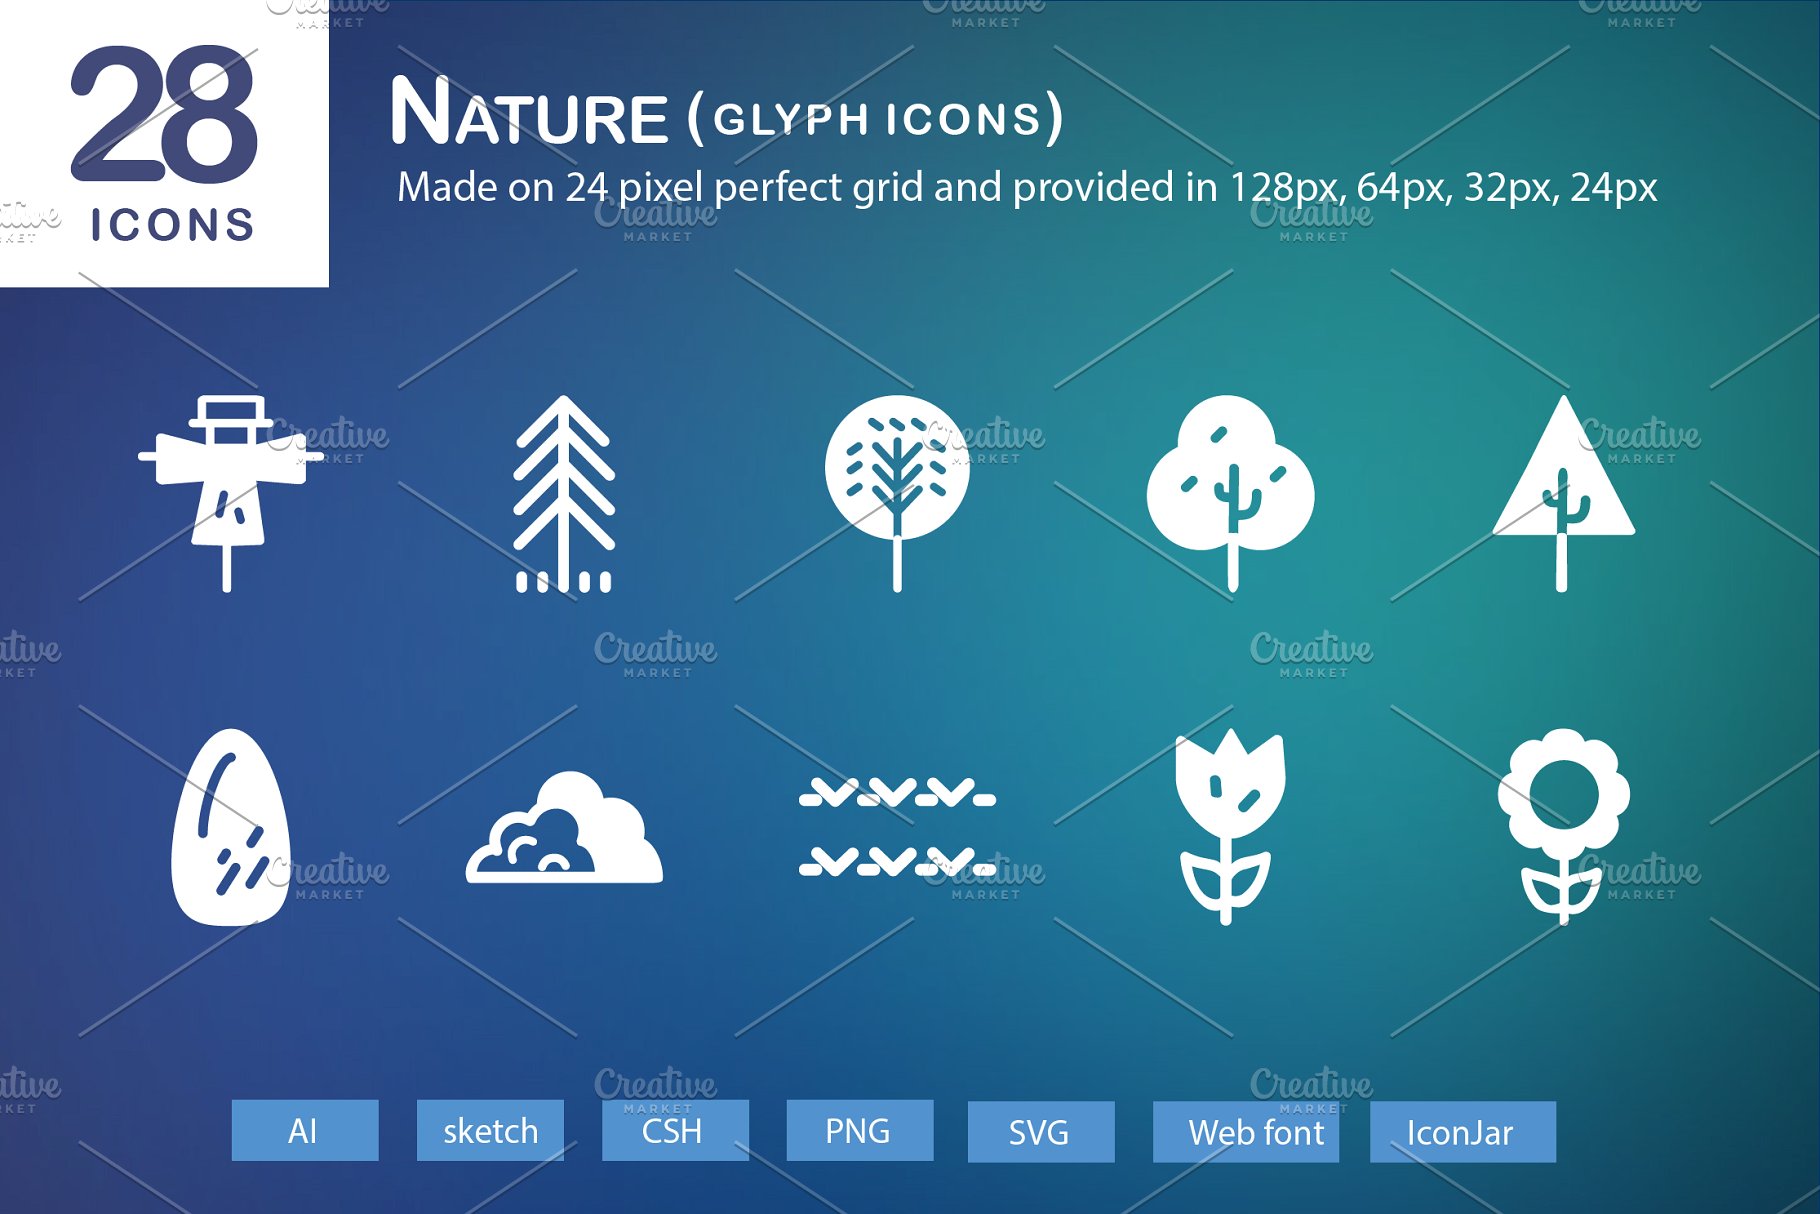 28个大自然元素字体第一素材精选图标 28 Nature Glyph Icons插图